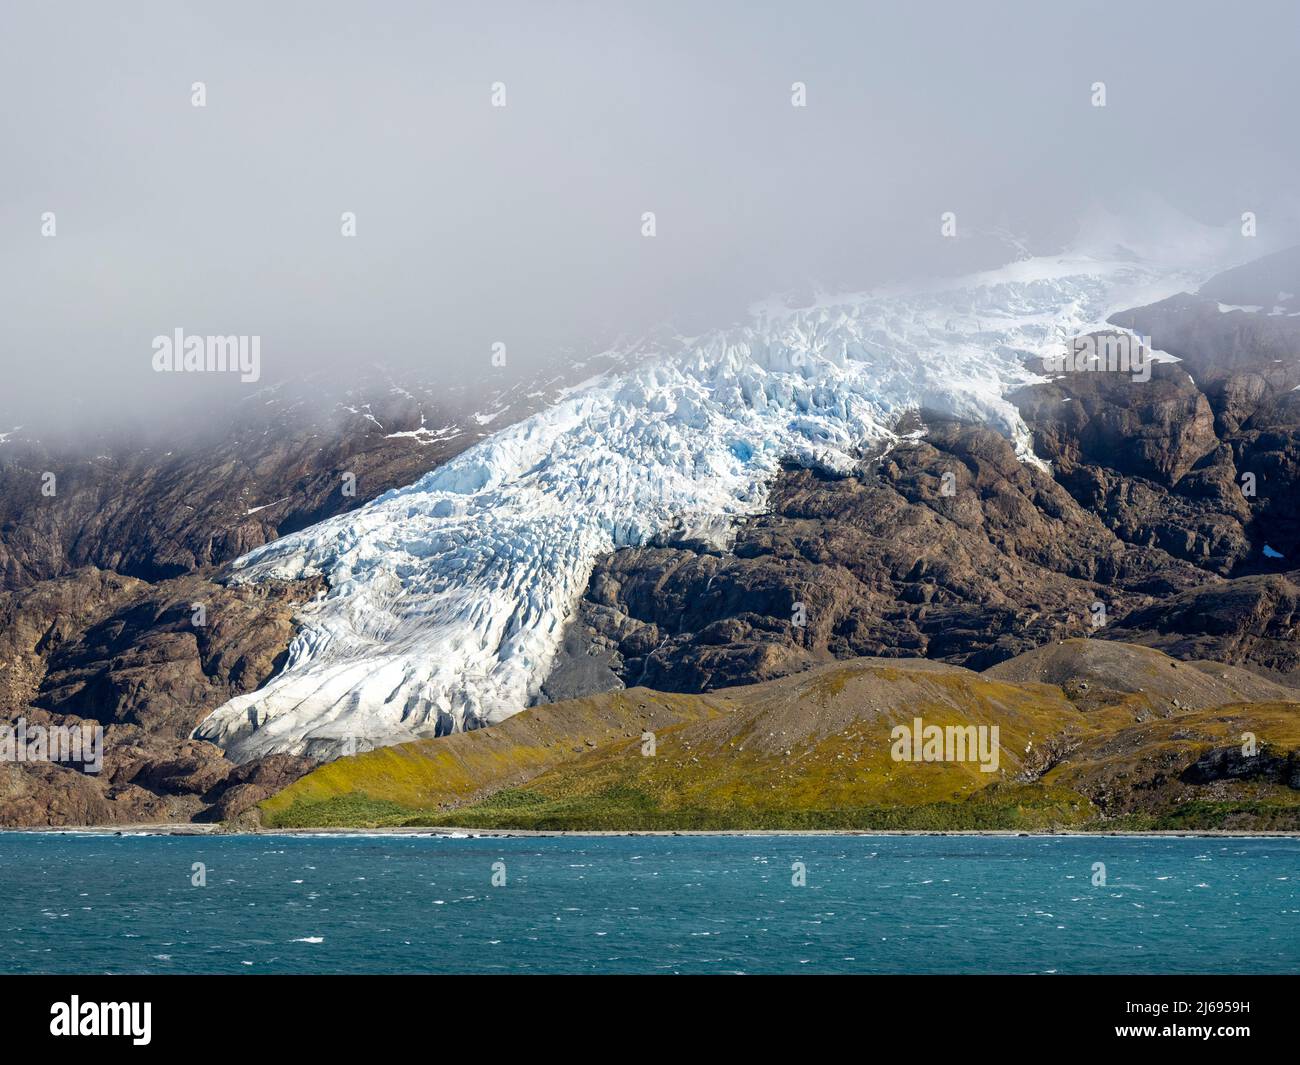 La glace et la neige couvraient les montagnes avec des glaciers dans la baie du Roi Haakon, en Géorgie du Sud, dans l'Atlantique Sud et dans les régions polaires Banque D'Images